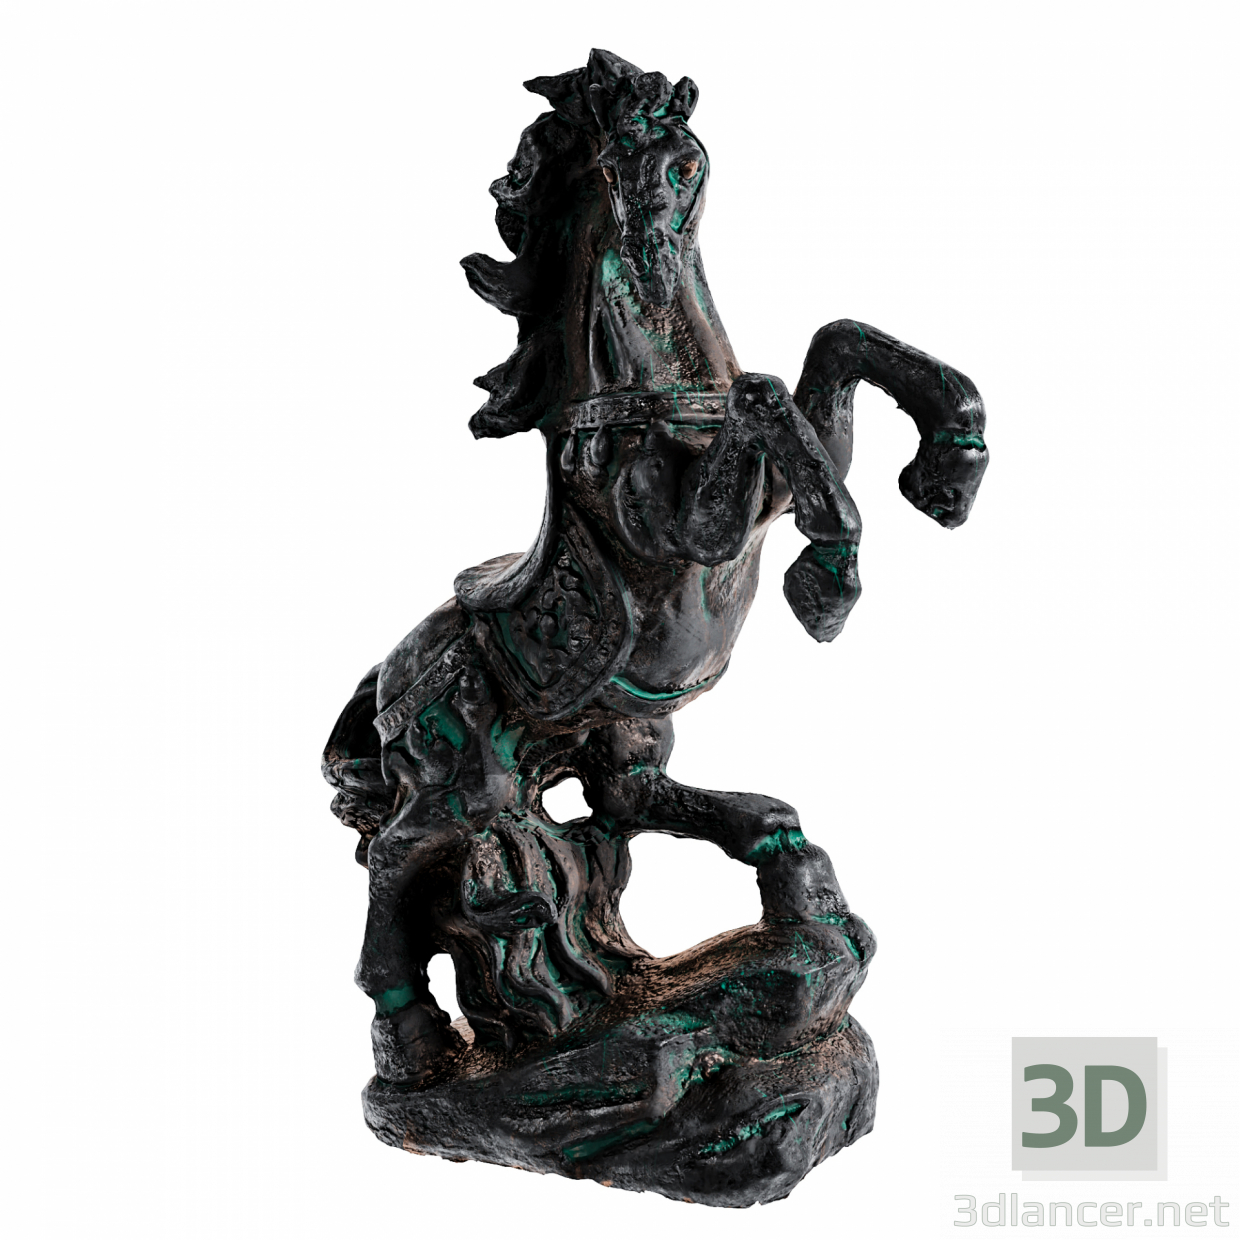 Altair_Studio_horse_dark 3D-Modell kaufen - Rendern